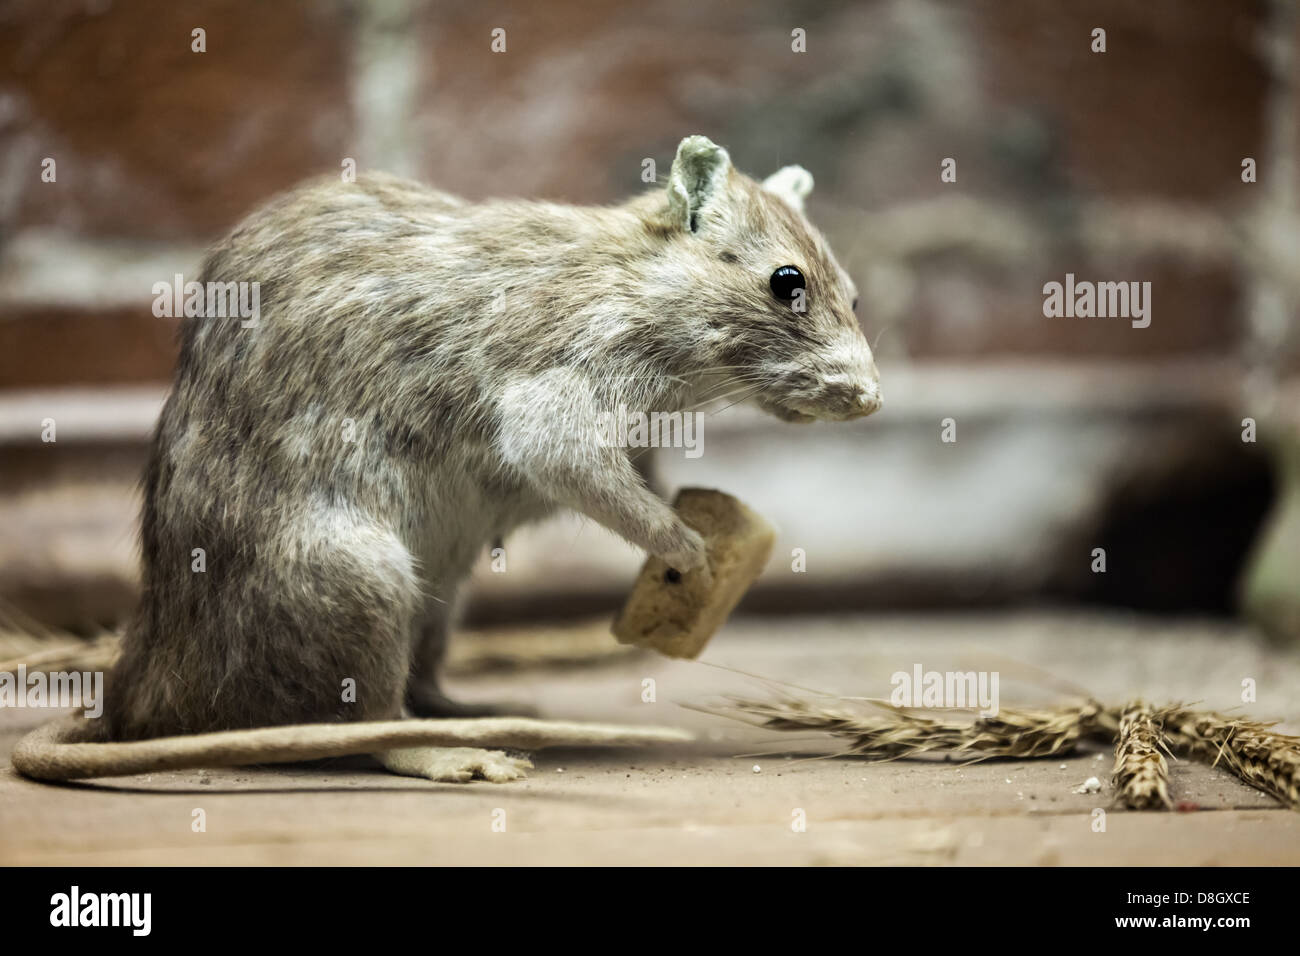 Animal comiendo pan fotografías e imágenes de alta resolución - Alamy